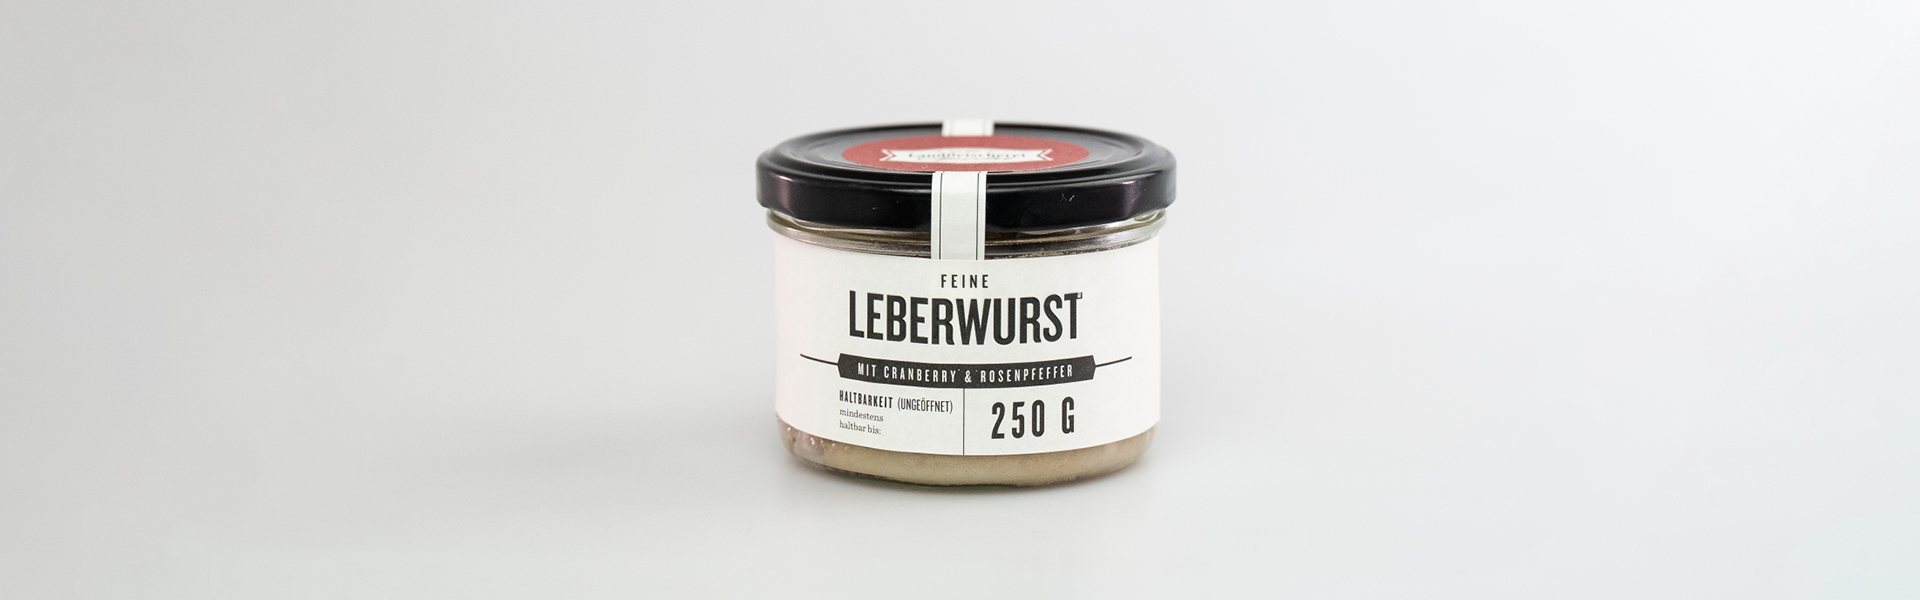 Etikett Produkt Design Landfleischerei Specht